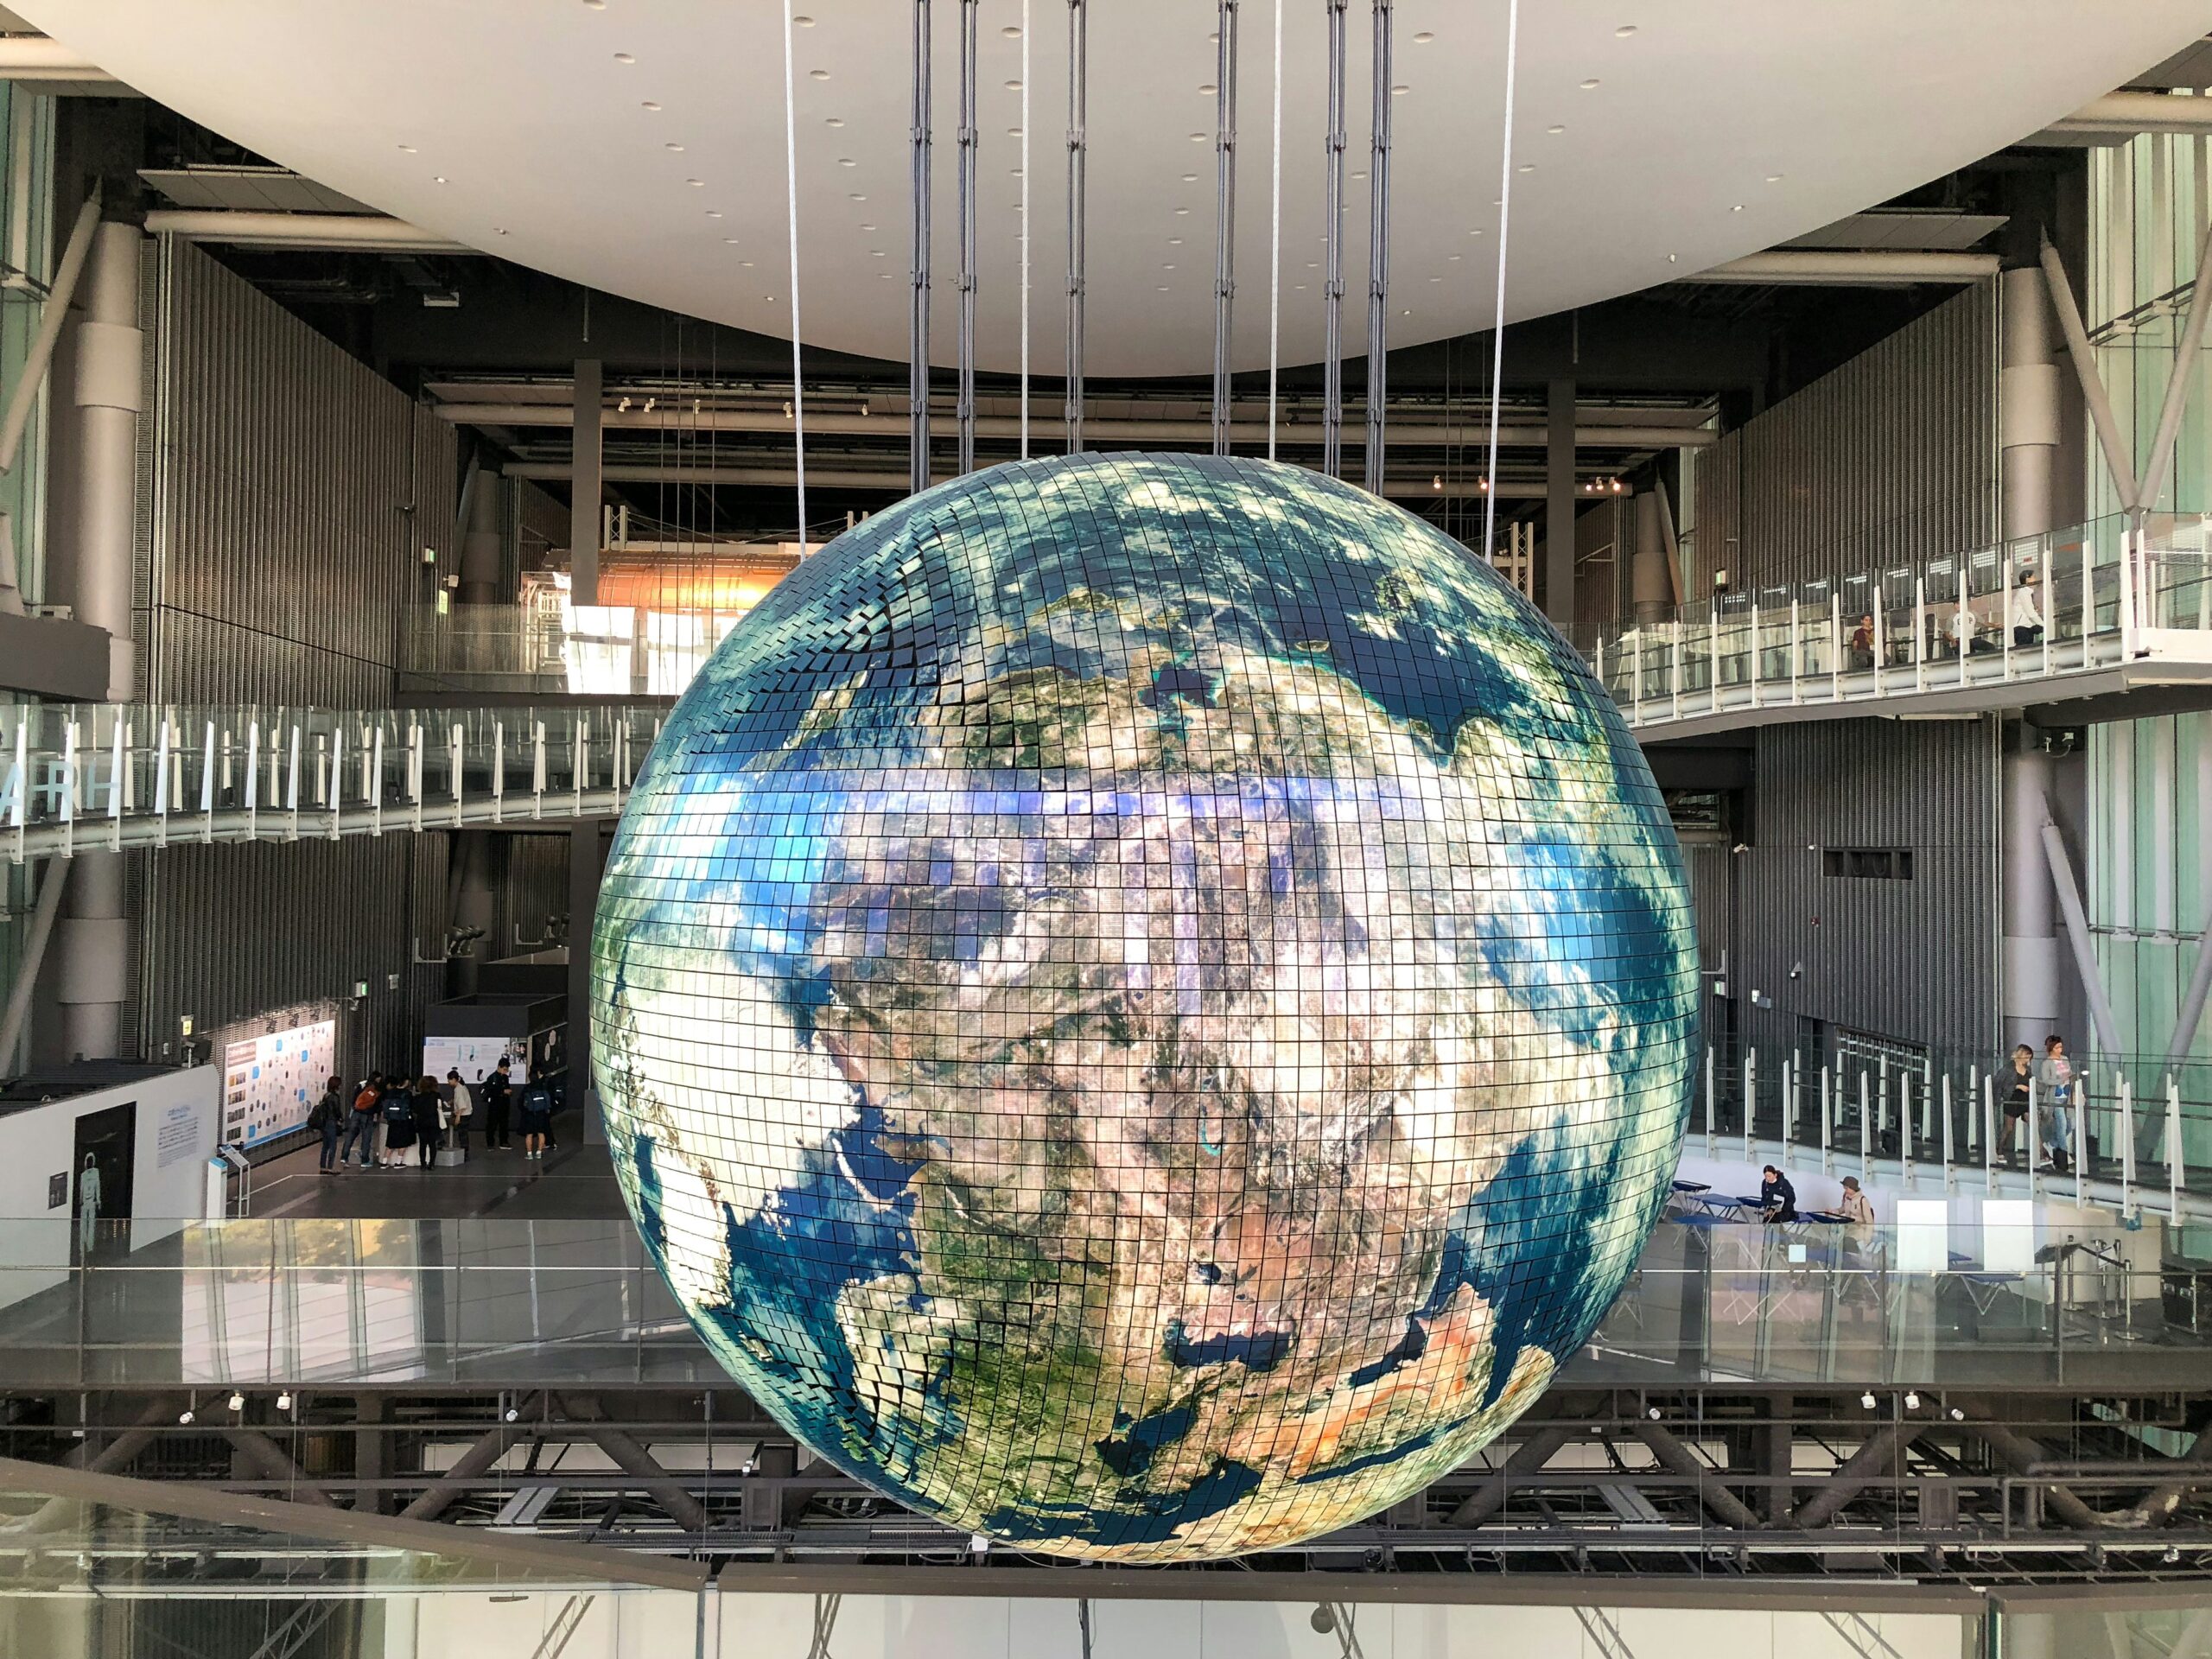 große Globus Installation in einem öffentlichen Gebäude, der Globus besteht aus vielen Mosaiks